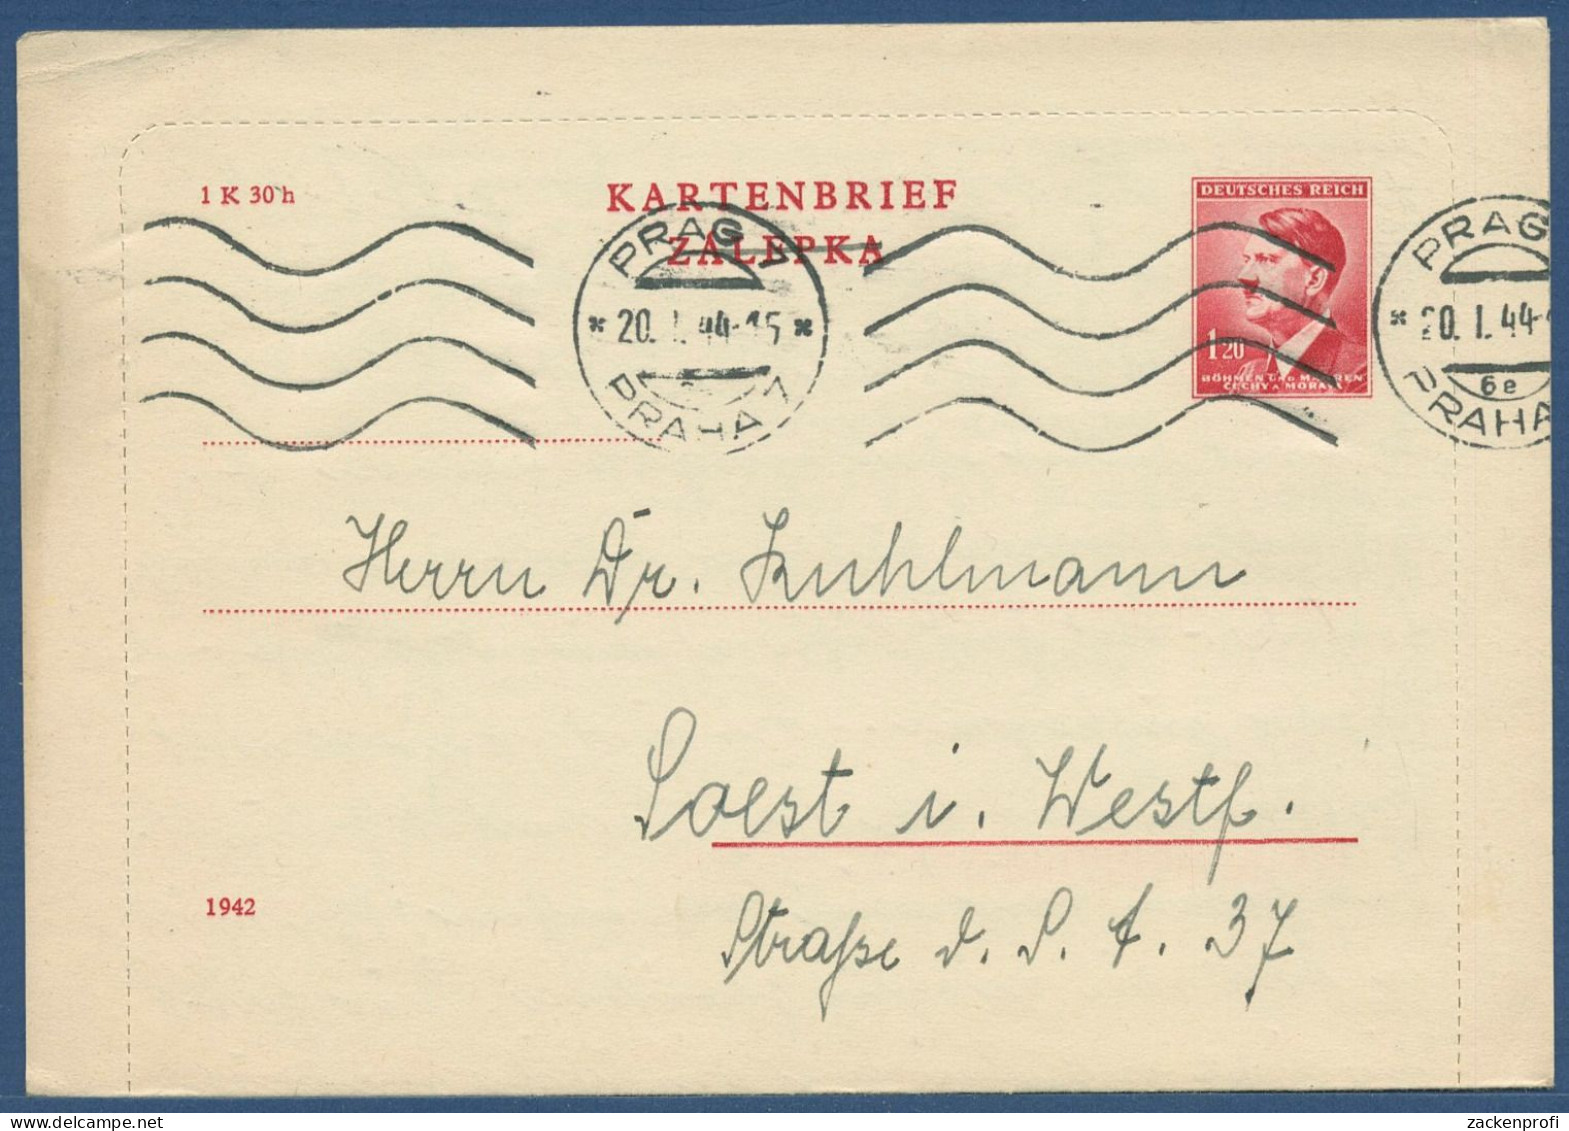 Böhmen Und Mähren 1942 Kartenbrief K 4 II A Gebraucht Mit Rand (X40611) - Covers & Documents